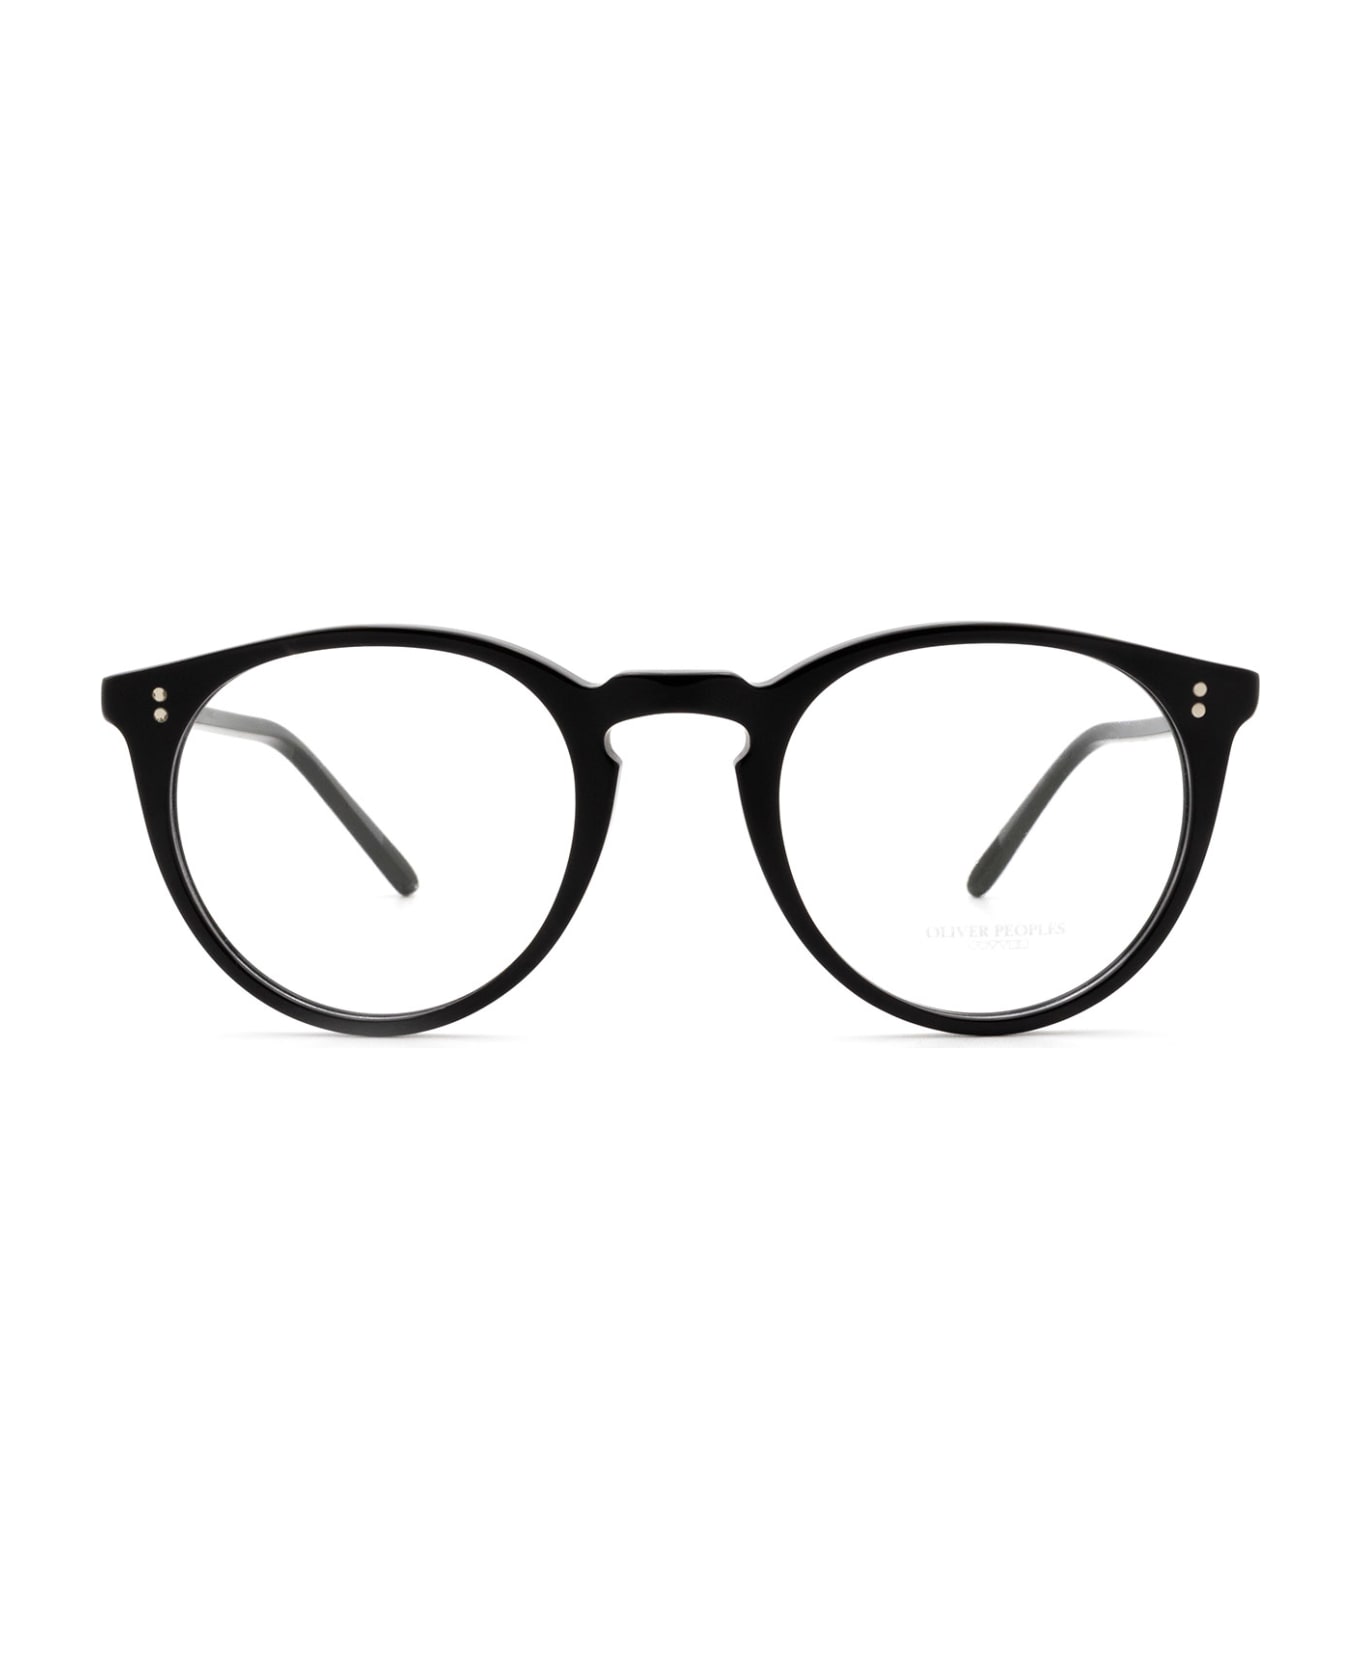 Oliver Peoples Ov5183 Black Glasses - Black